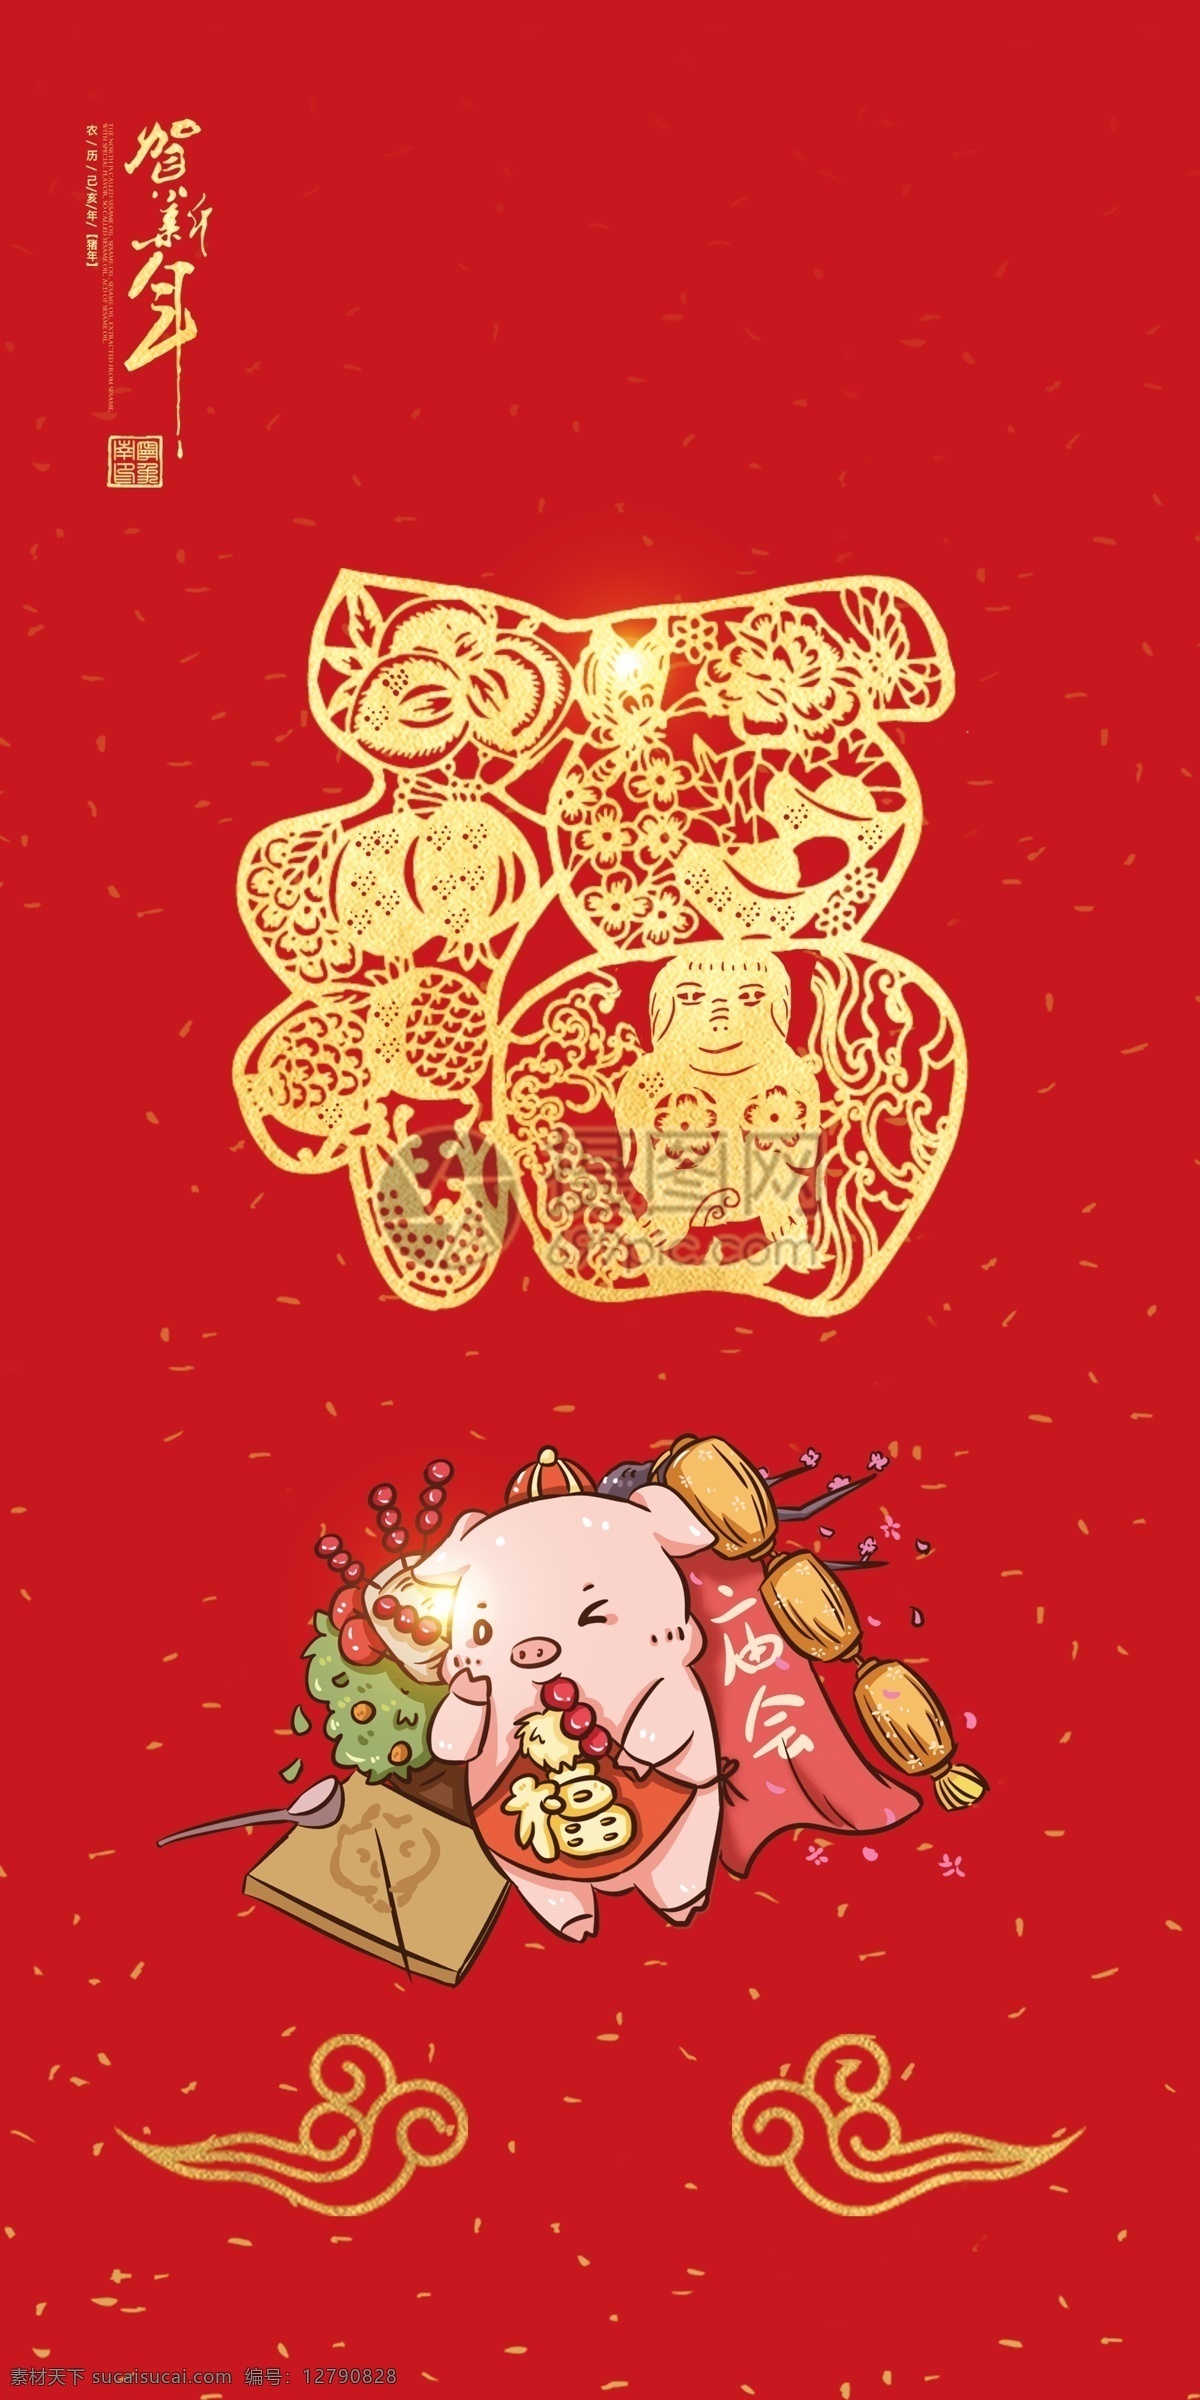 2019 中国 红 猪年 红包 贺岁红包 红包设计 红包模板 猪年素材 猪年设计 新年 2019年 猪年海报 猪年红包设计 红包素材 猪年红包 猪年小红包 猪年元素 猪年红包元素 新年红包 红色大气红包